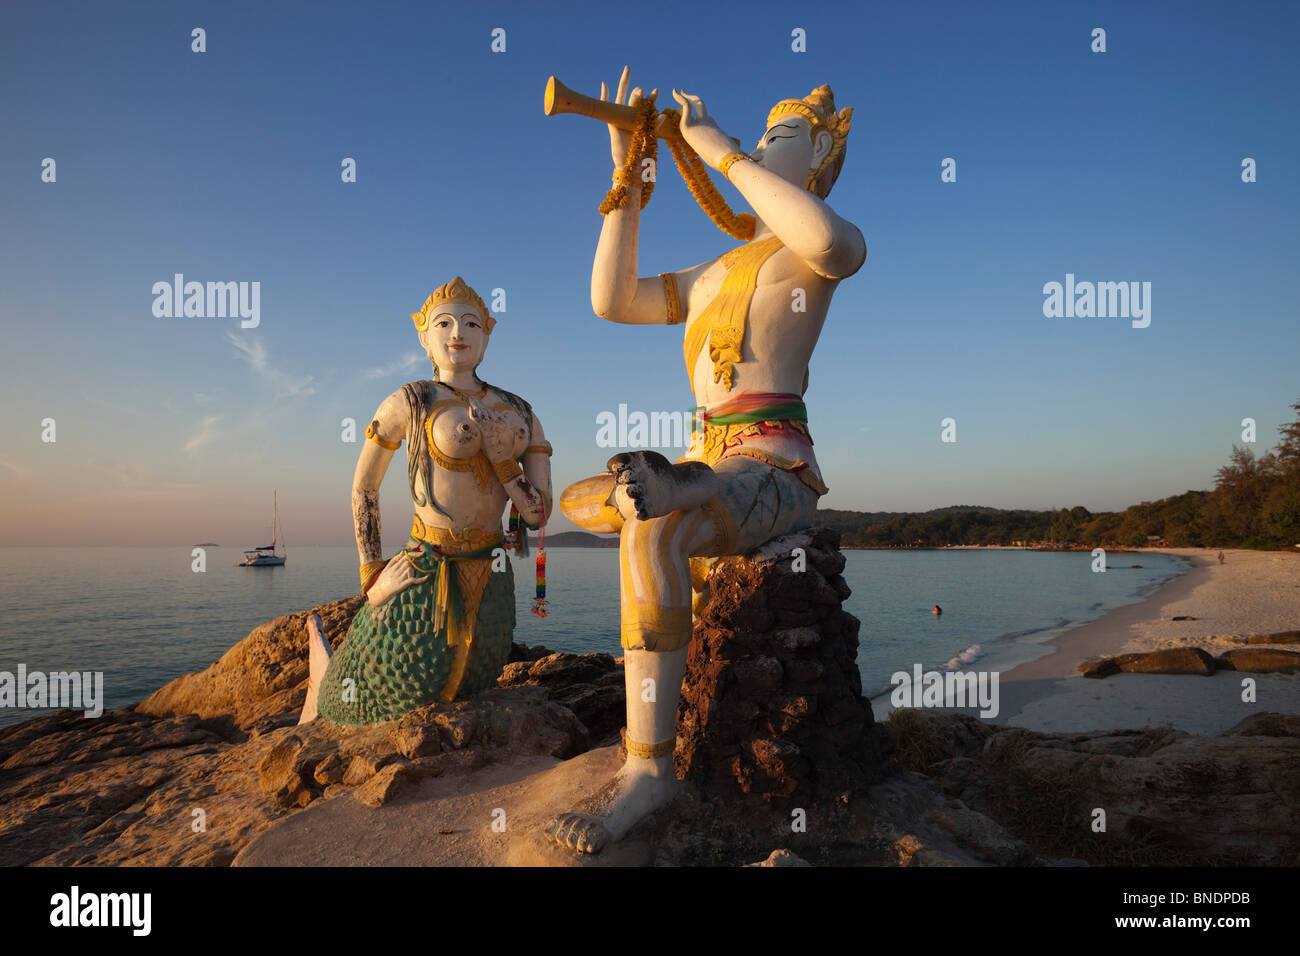 Statuen von einem Flötenspieler und eine Meerjungfrau am Strand, Sai Kaew Beach, Ko Samet, Thailand Stockfoto